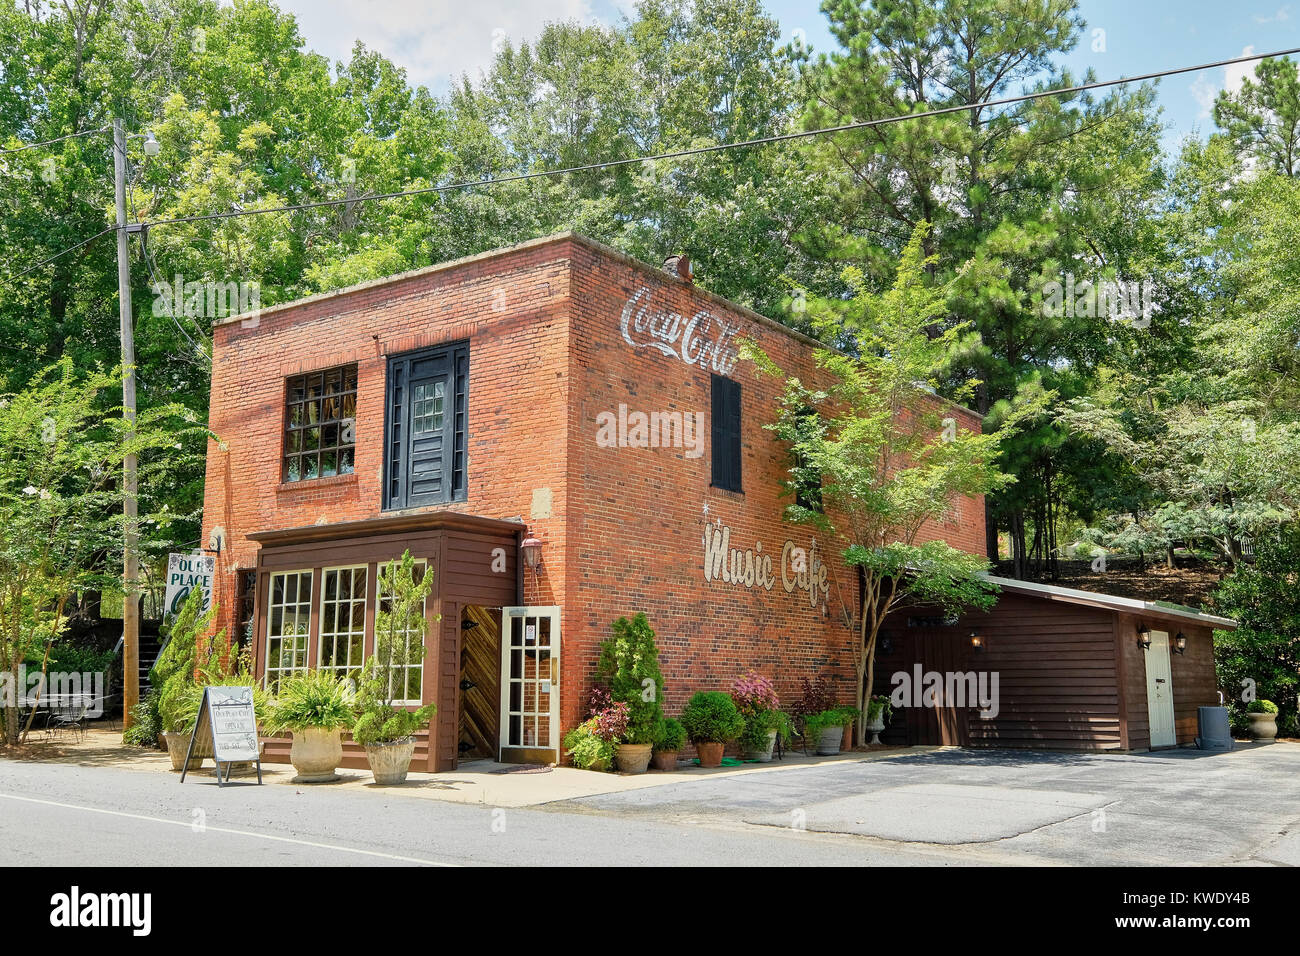 Unser Platz Cafe ist ein Restaurant im ländlichen Wetumpka, Alabama, USA, Umstrukturieren einer alten Vintage Ziegelgebäude mit Werbung auf der Seite. Stockfoto